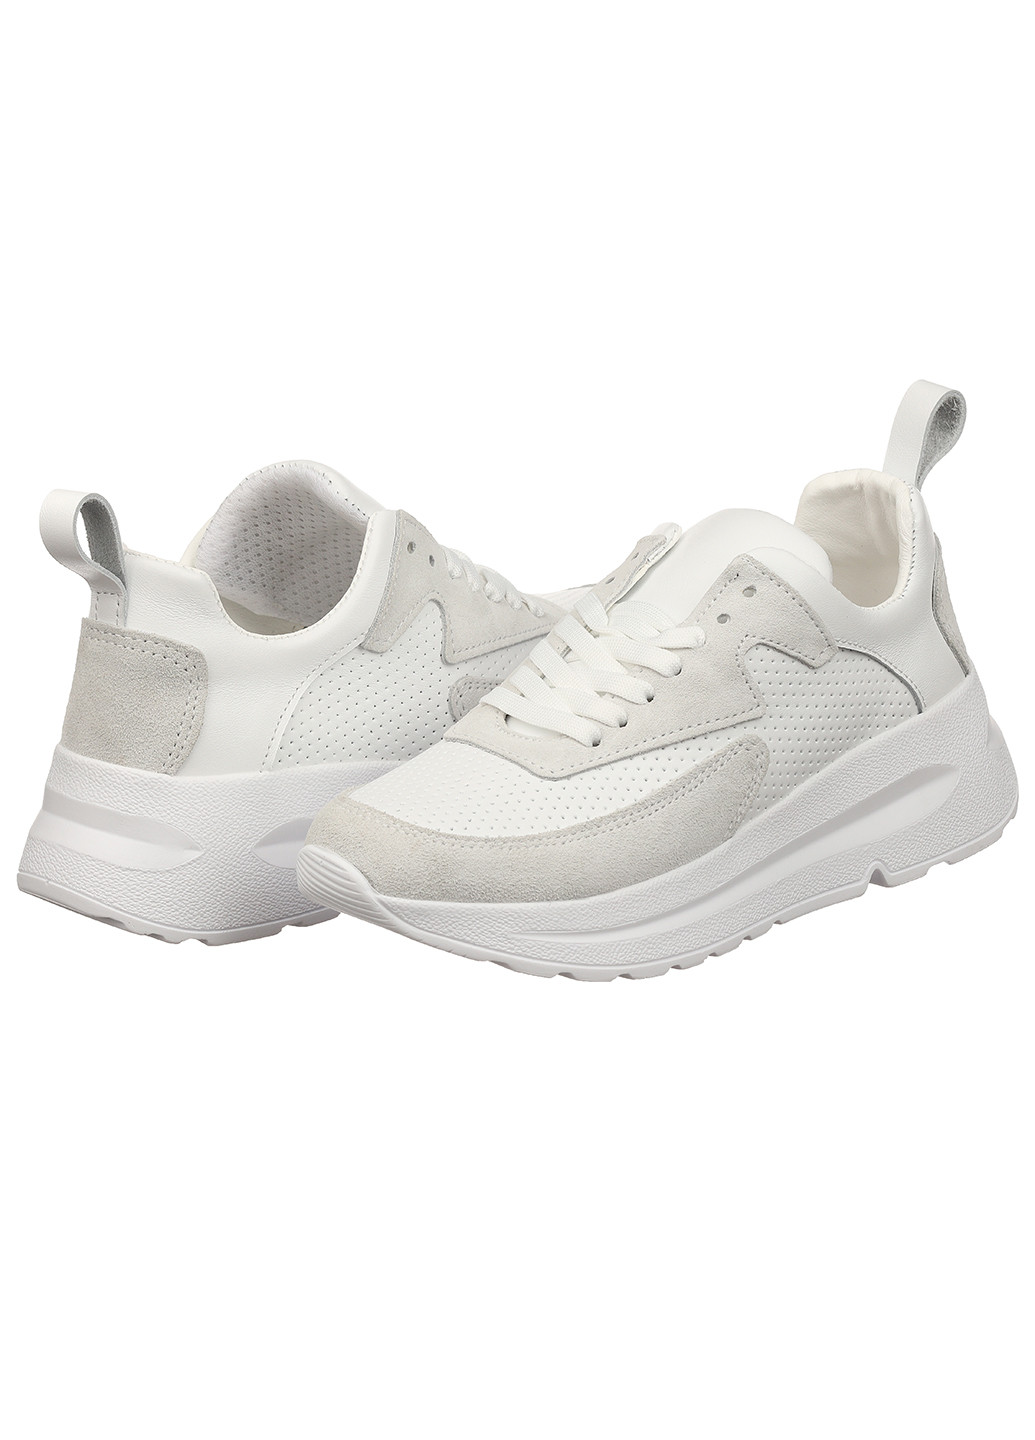 Белые демисезонные женские кроссовки 10213-06 Best Vak